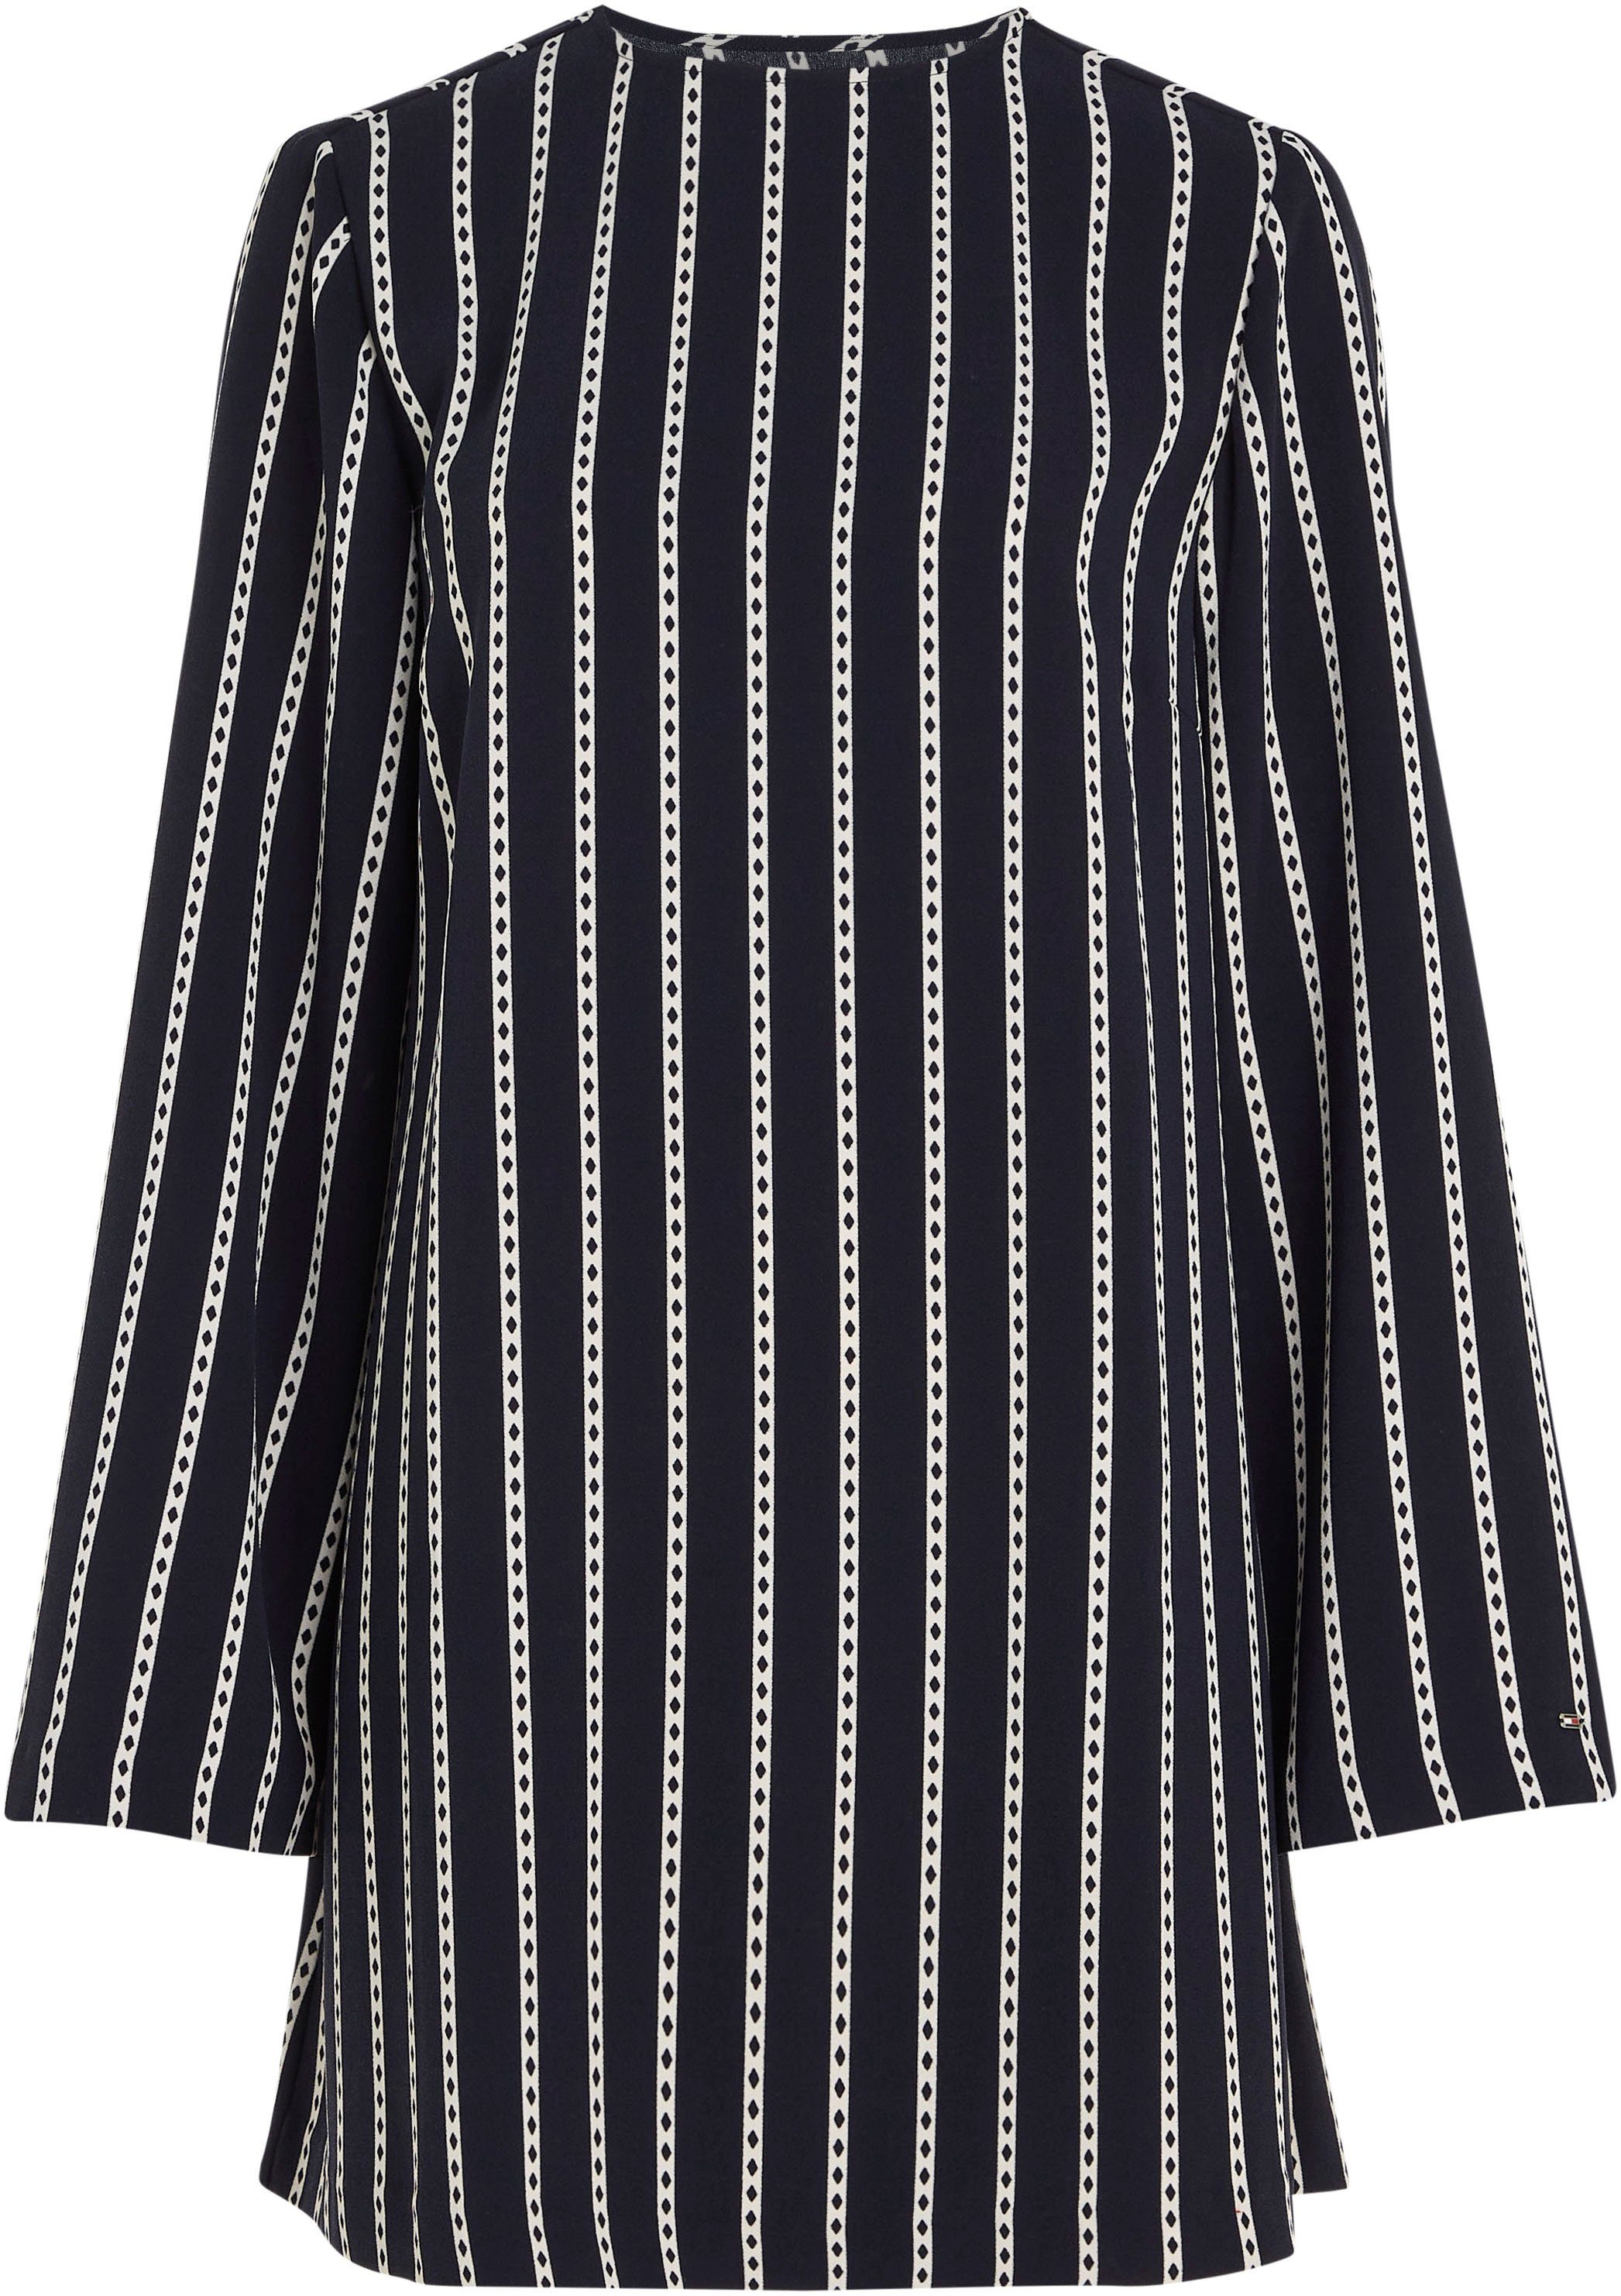 CREPE ARGYLE Rundhals Blusenkleid STRIPE Tommy SHIFT DRESS mit Hilfiger